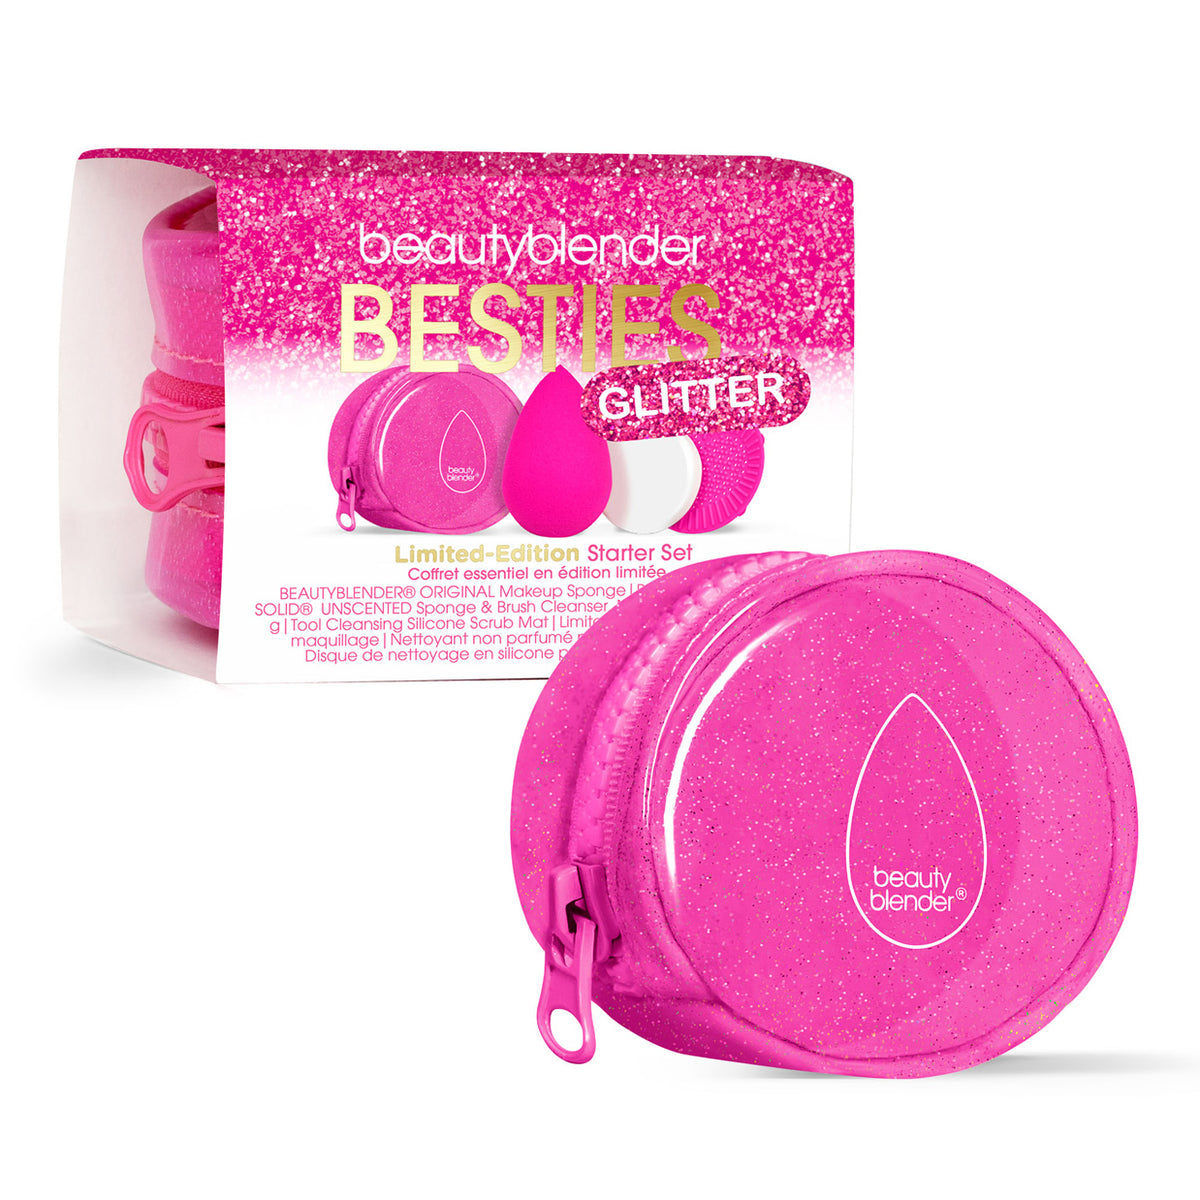 Besties Glitter Blend & Cleanse 4-Piece Starter Set.